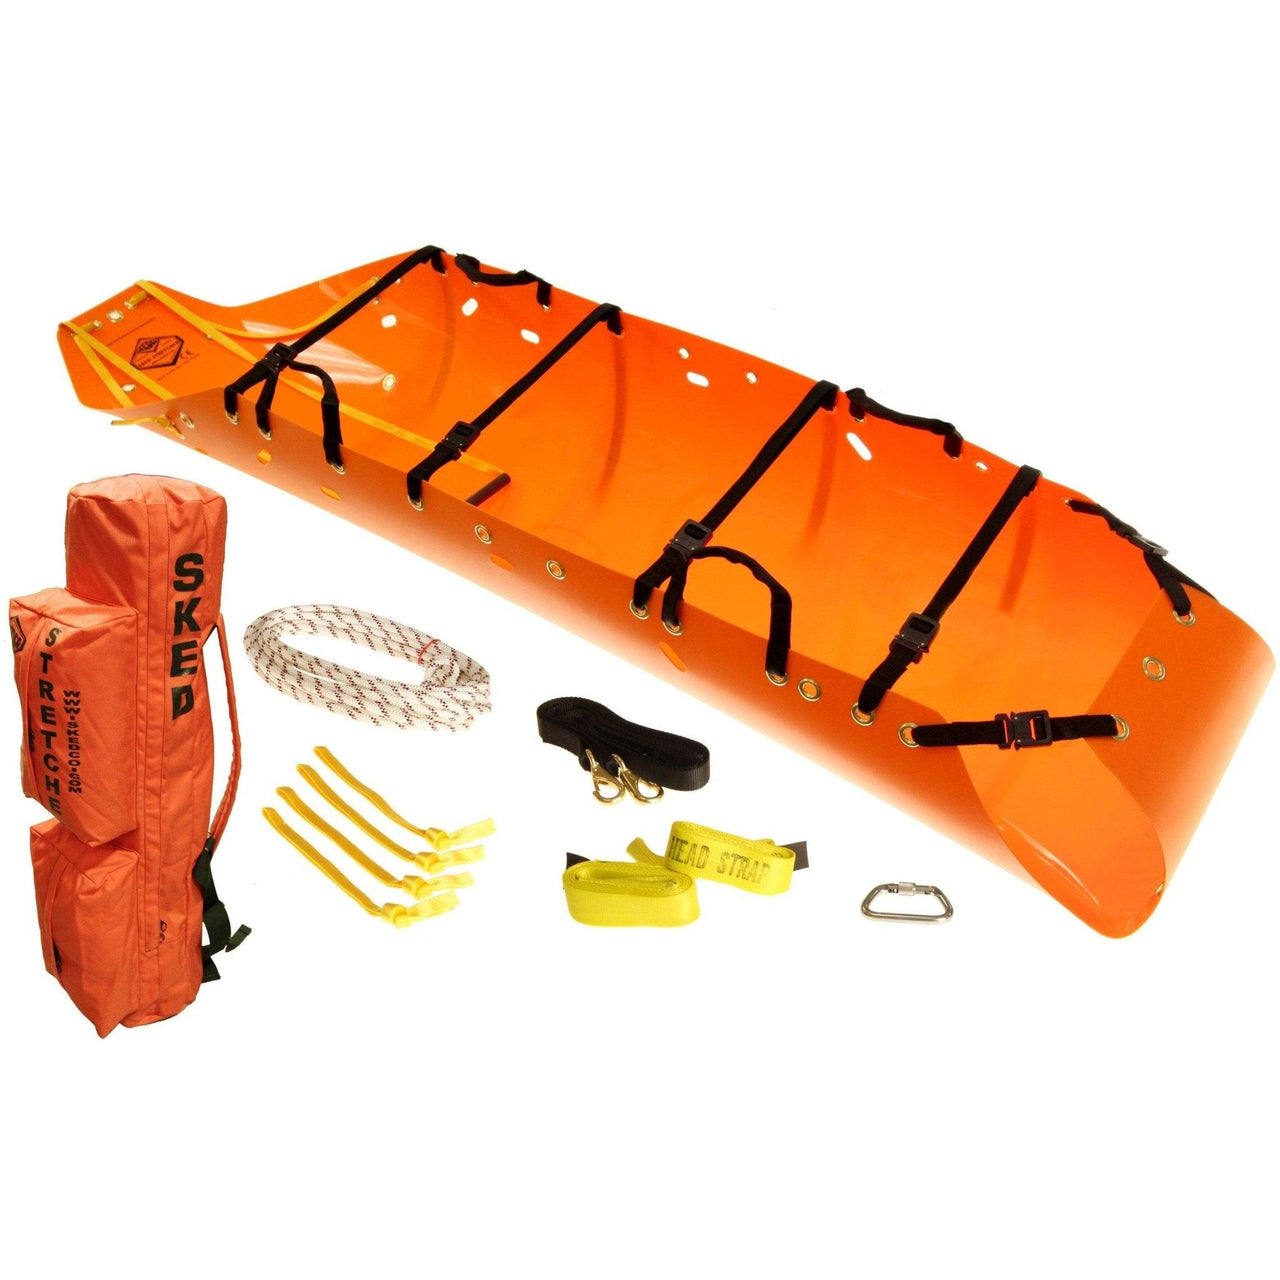 Sked® Basic Rescue System - International Orange - Vendor